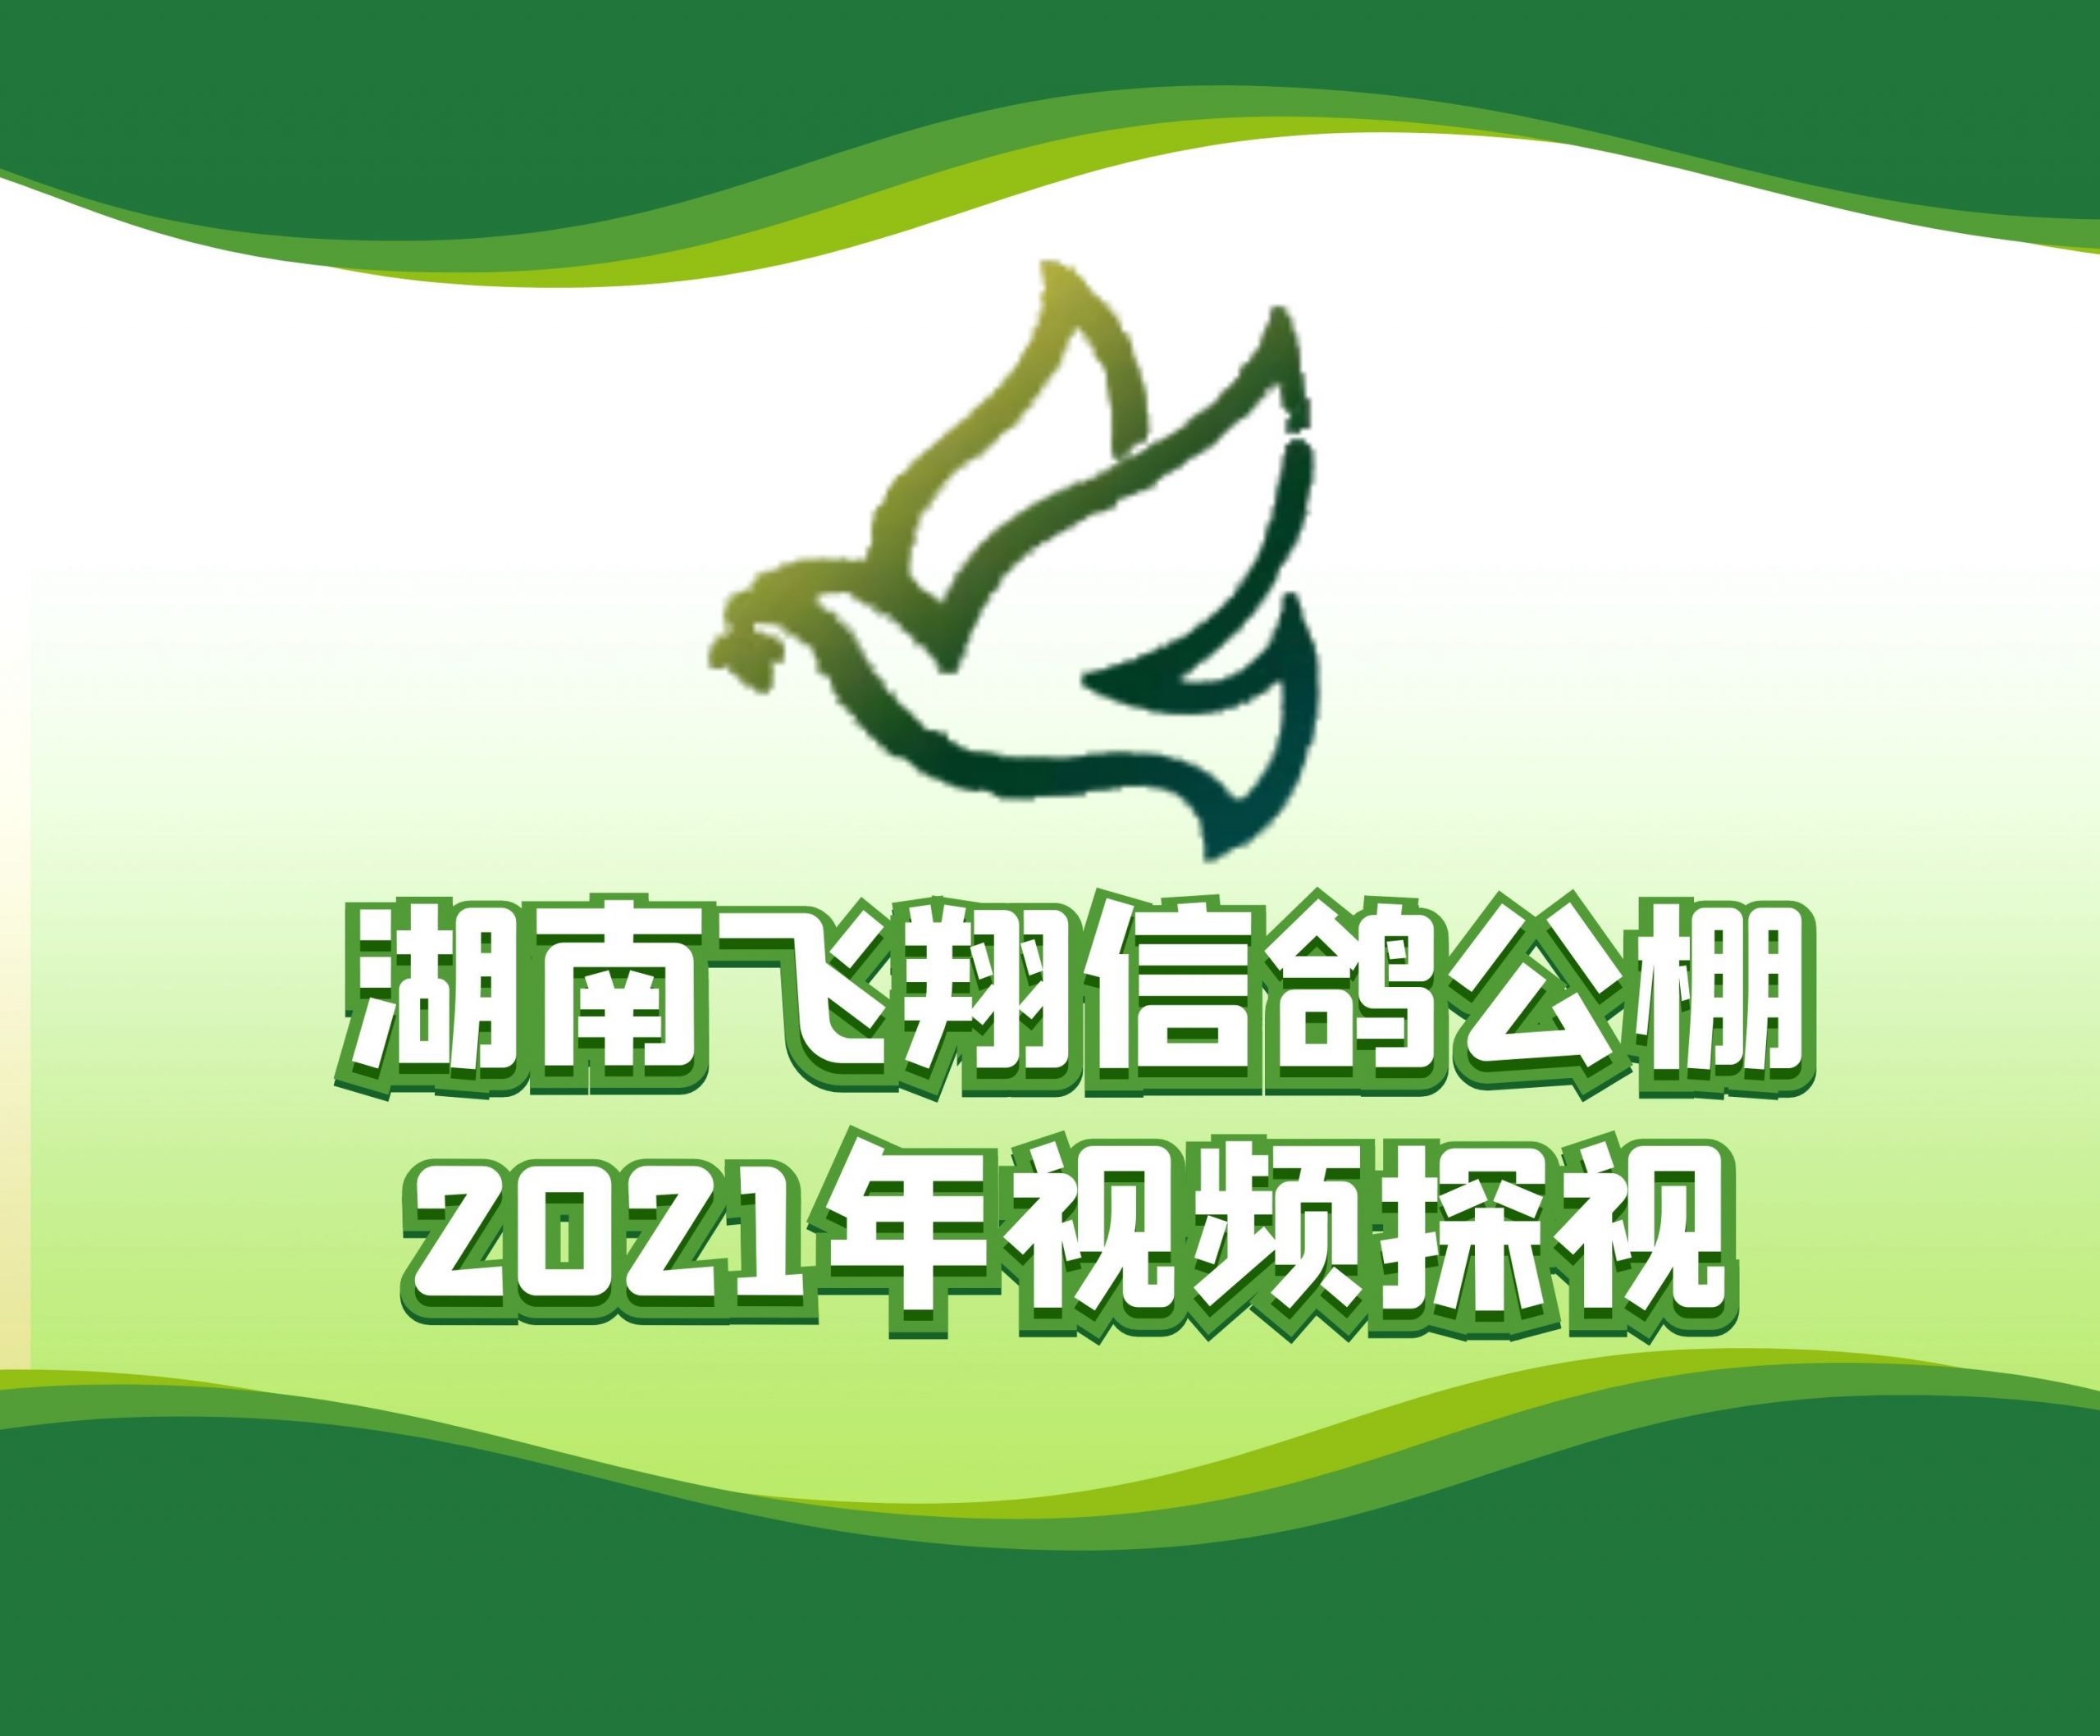 向桂林-2021-18-0113426